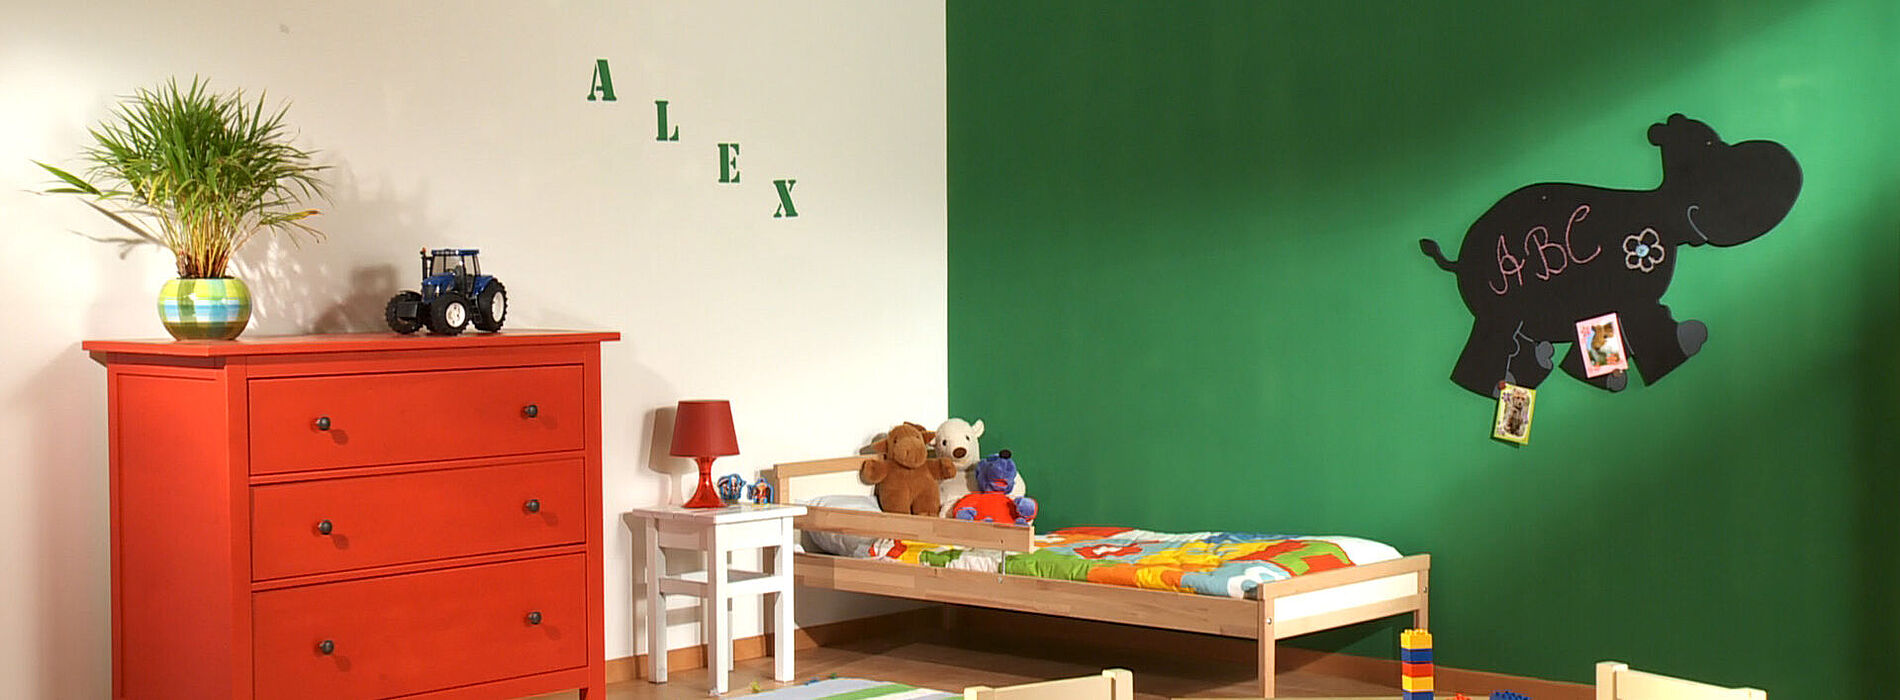 Ambiente Kinderzimmer Nilpferd Schablone